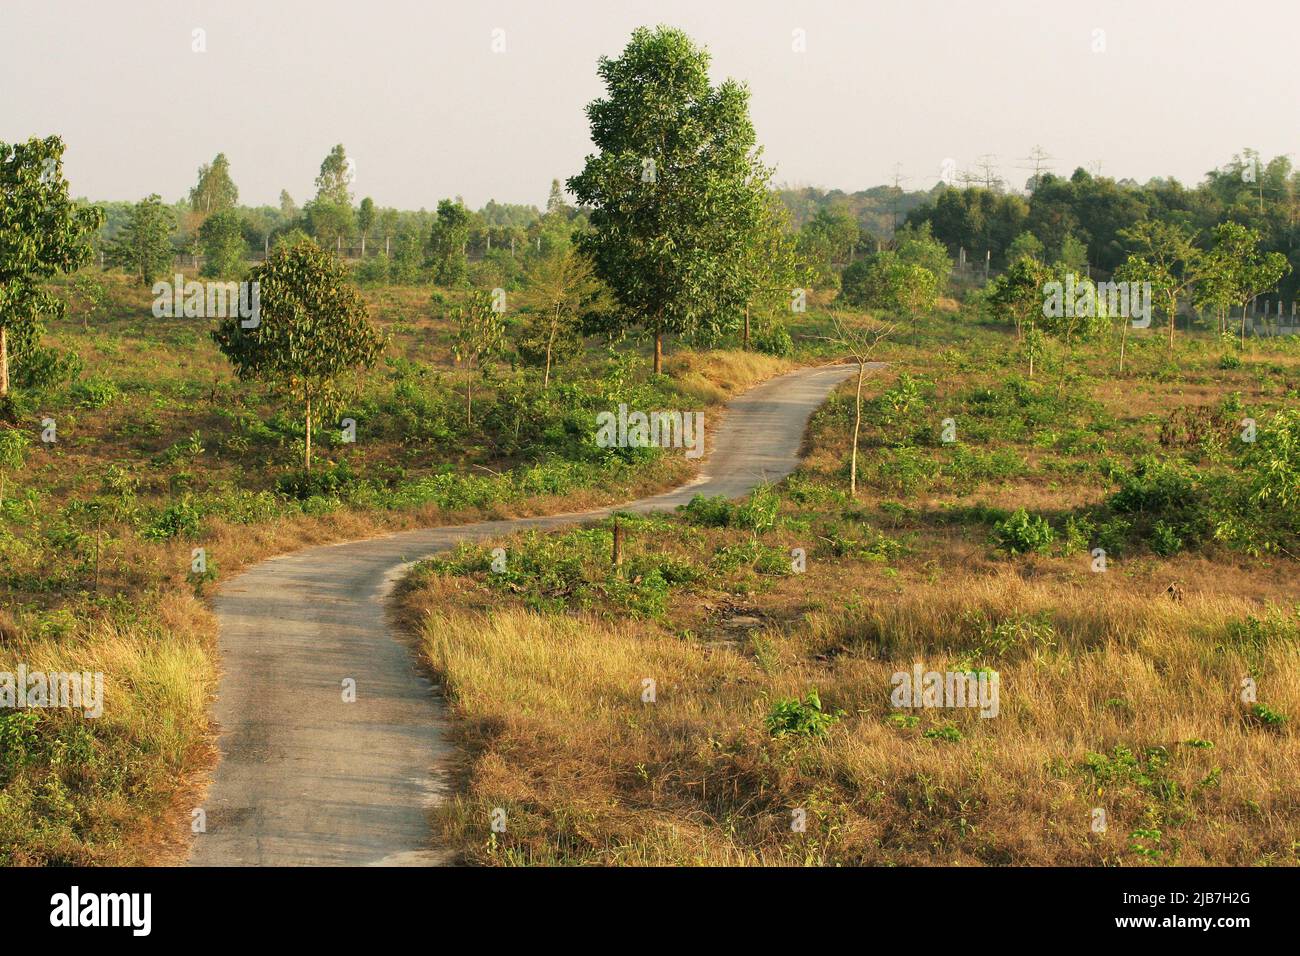 Ein Blick auf den Dulahazra Safari Park in Chokoria, etwa 107 Kilometer von Chittagong entfernt, am 30. März 2007. Der Park ist ein Ort der Forschung, Erholung und alternativen Bildung sowie des Wildtierschutzes. Stockfoto